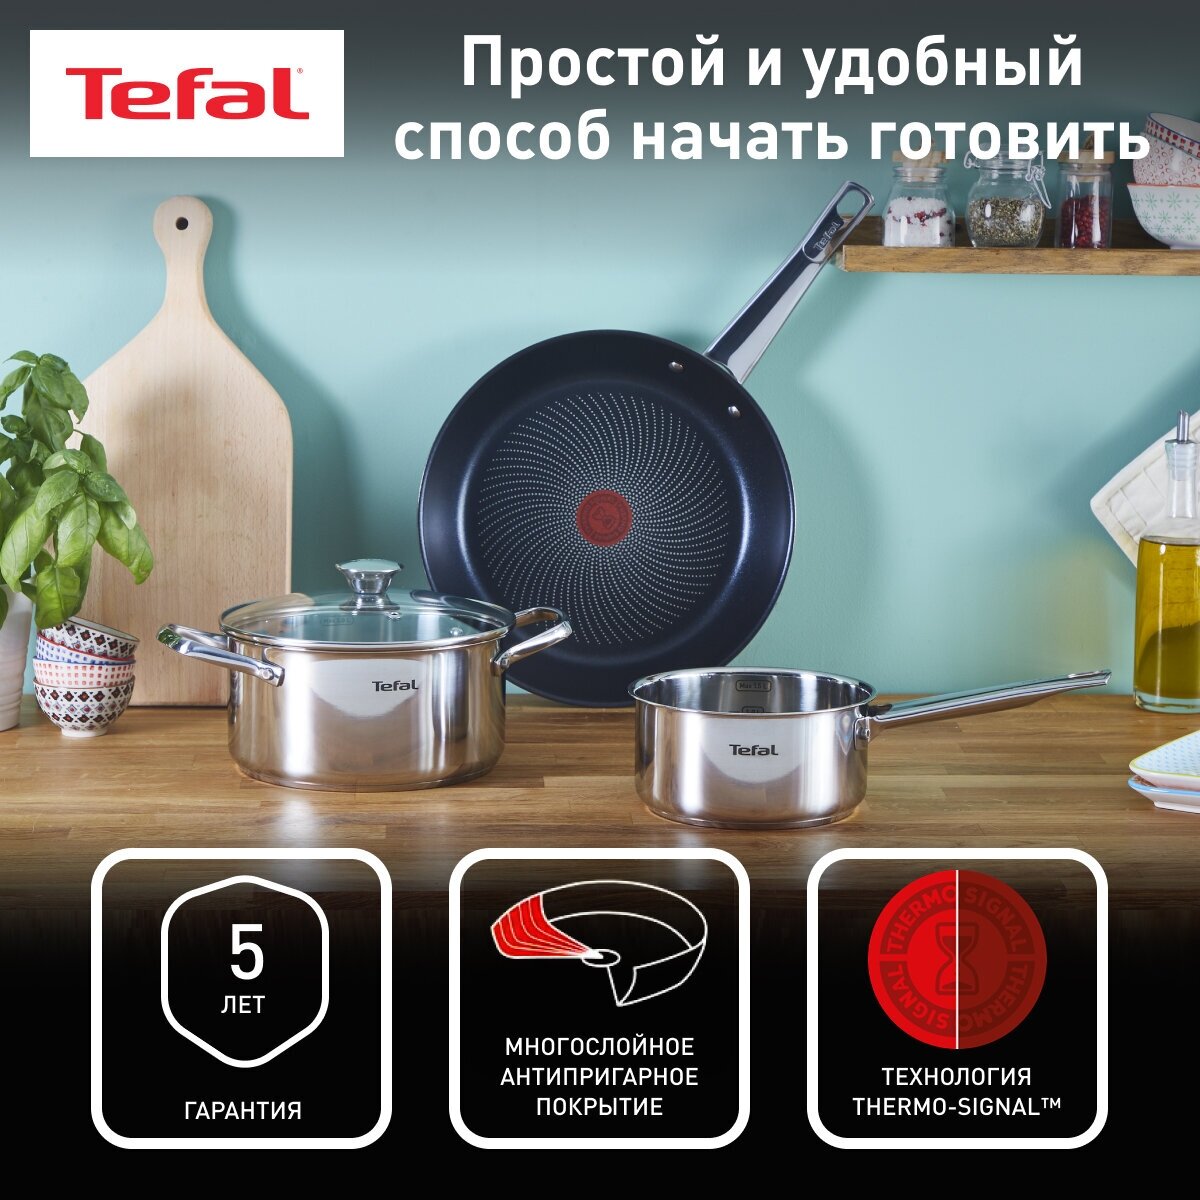 Набор посуды из нержавеющей стали Tefal Cook Eat B922S434, 4 предмета, кастрюля, ковш и сковорода с толстым дном, для газовых, электрических и индукционных плит